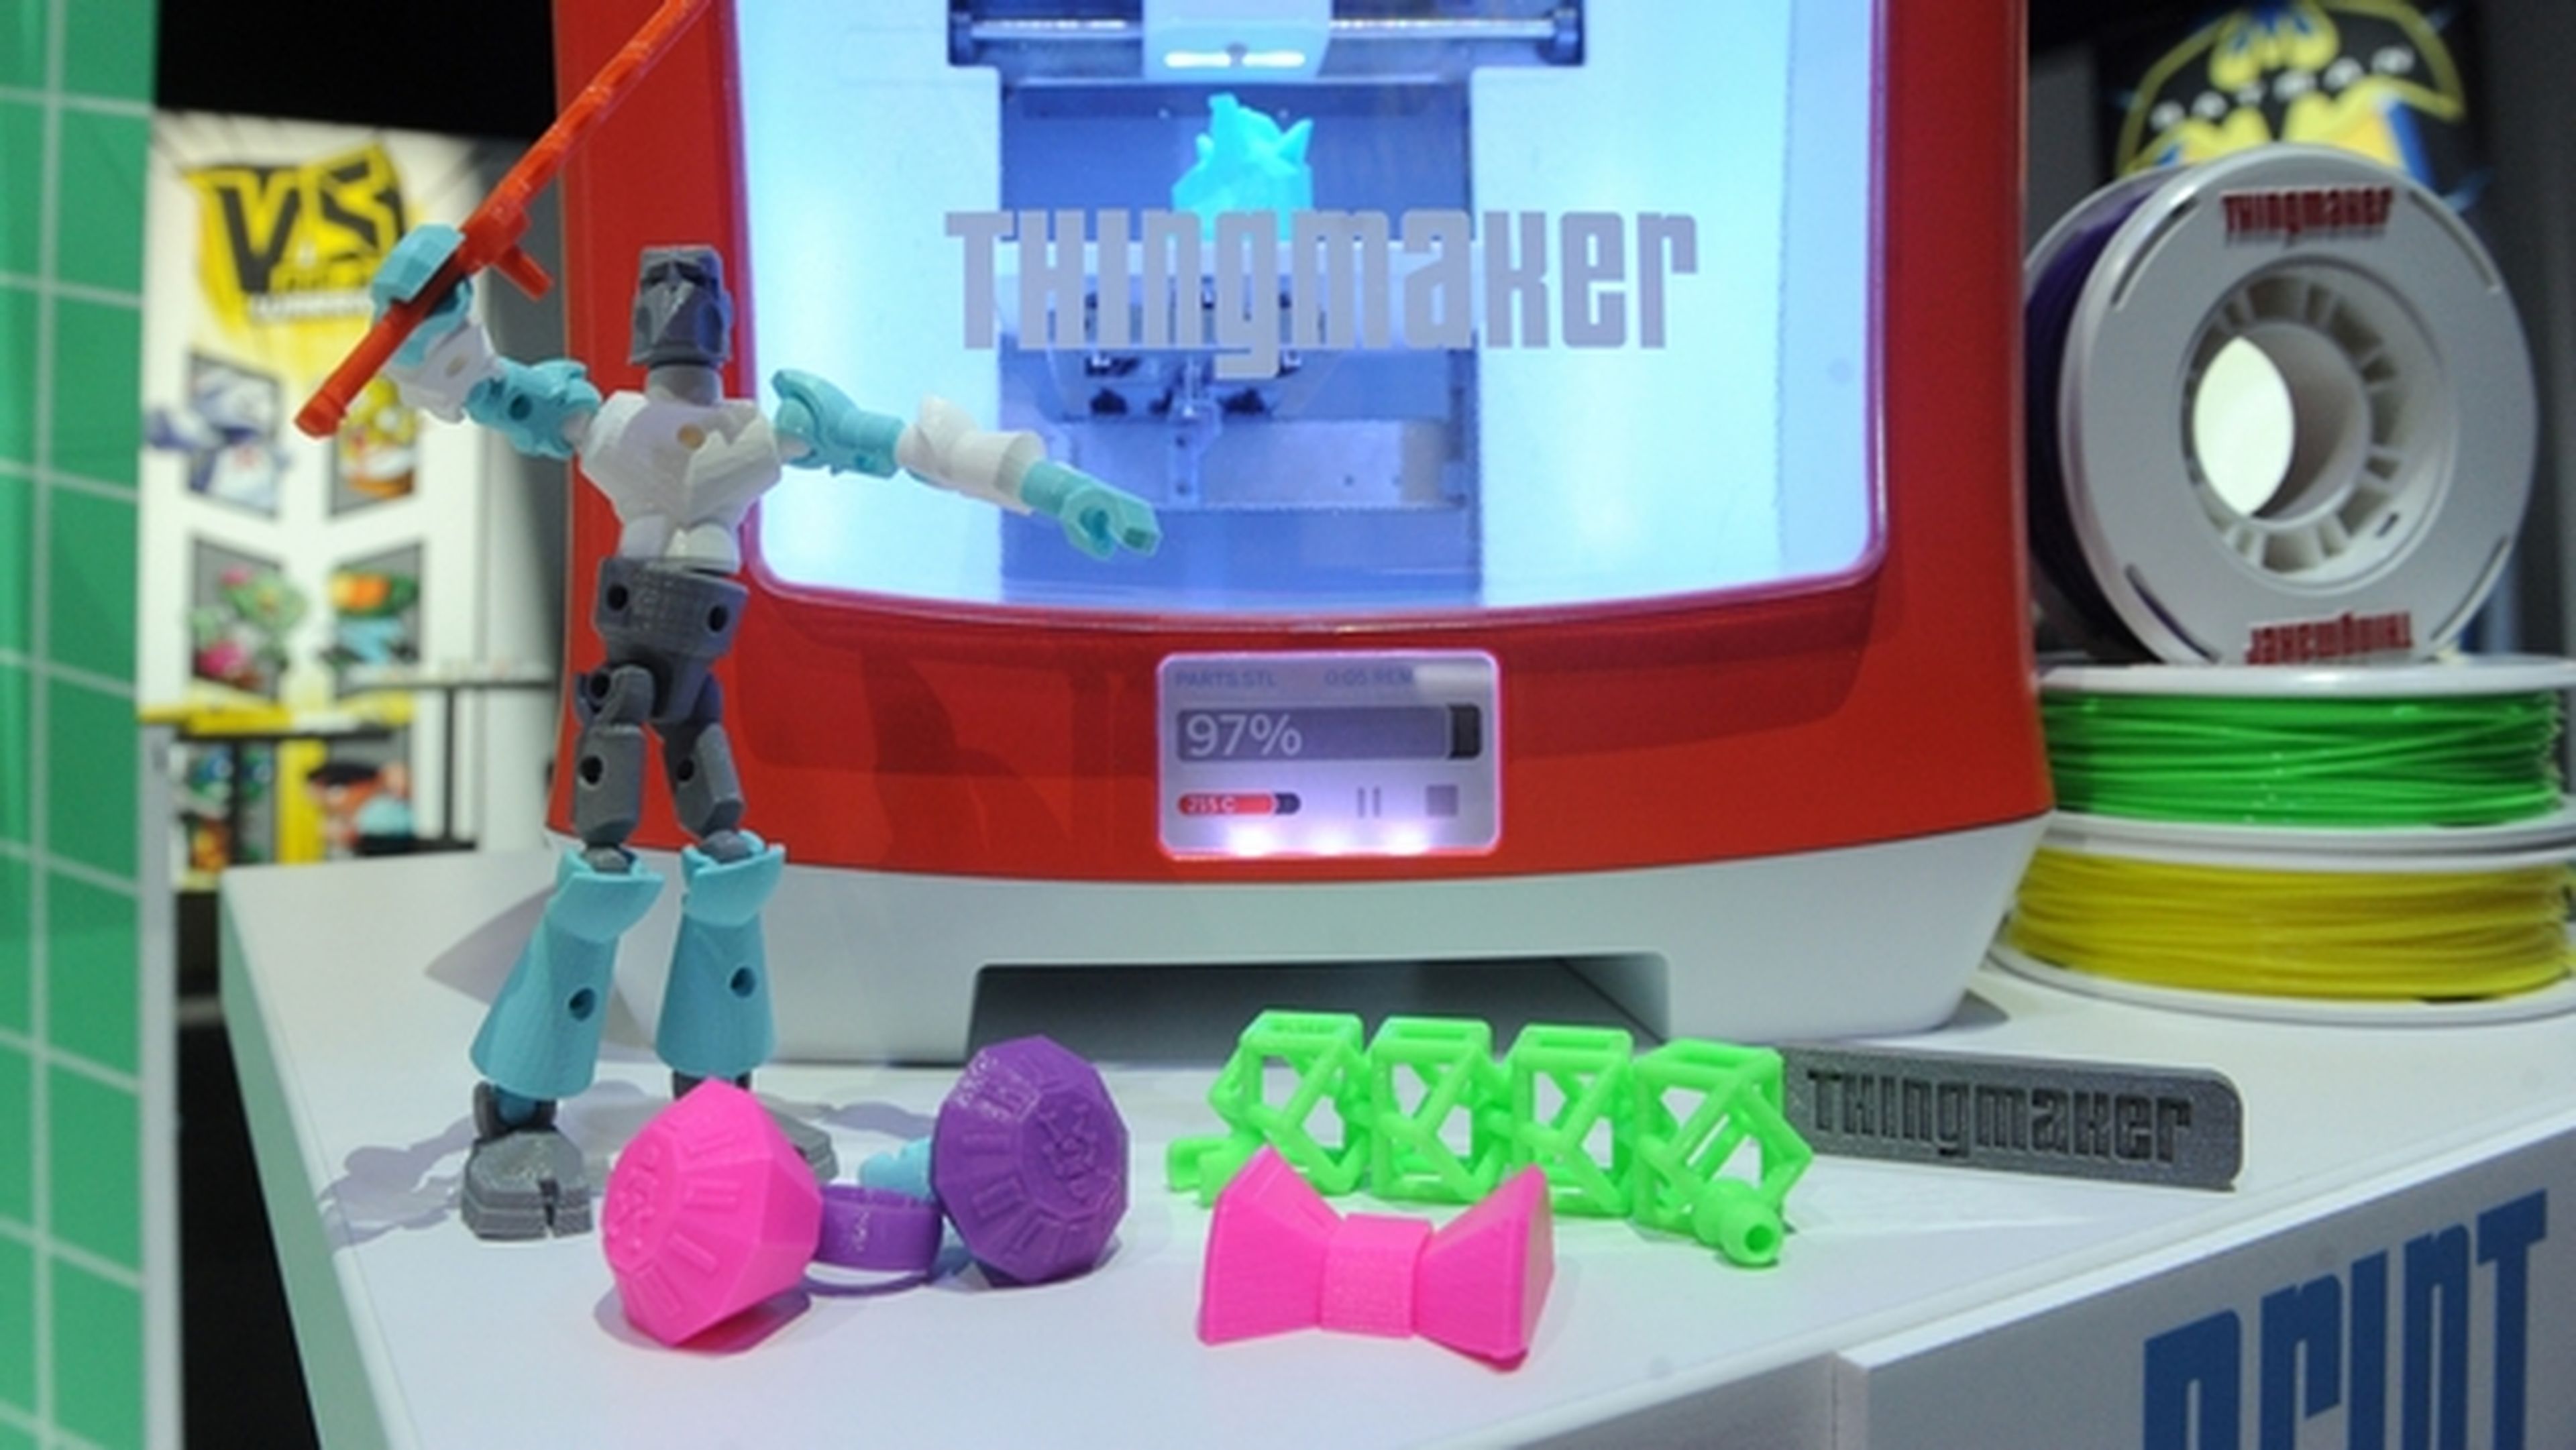 Mattel ThinkMaker, la impresora 3D para niños que imprime juguetes